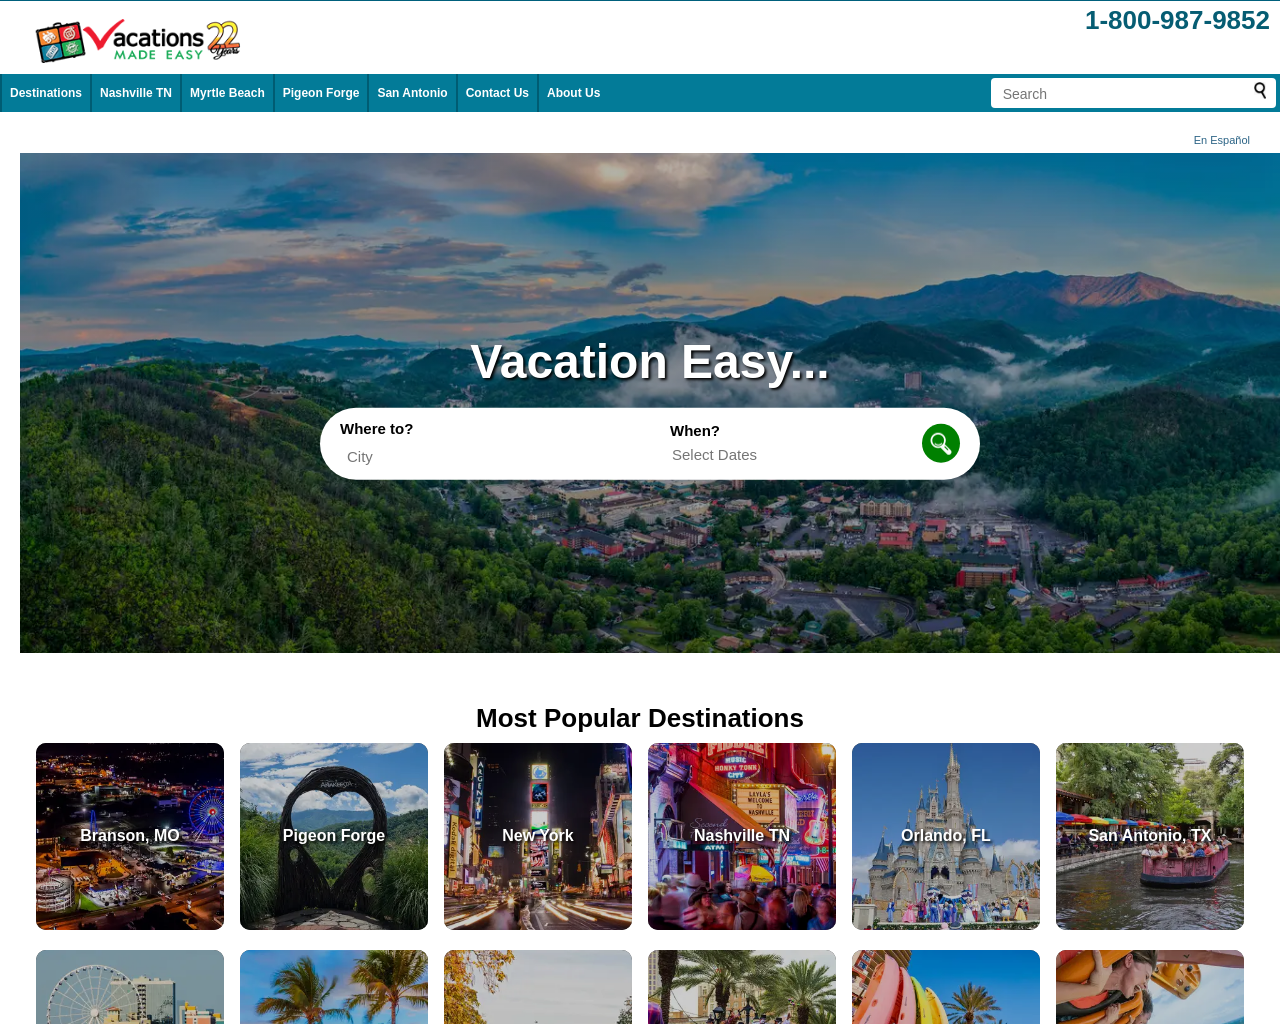 vacationsmadeeasy.com